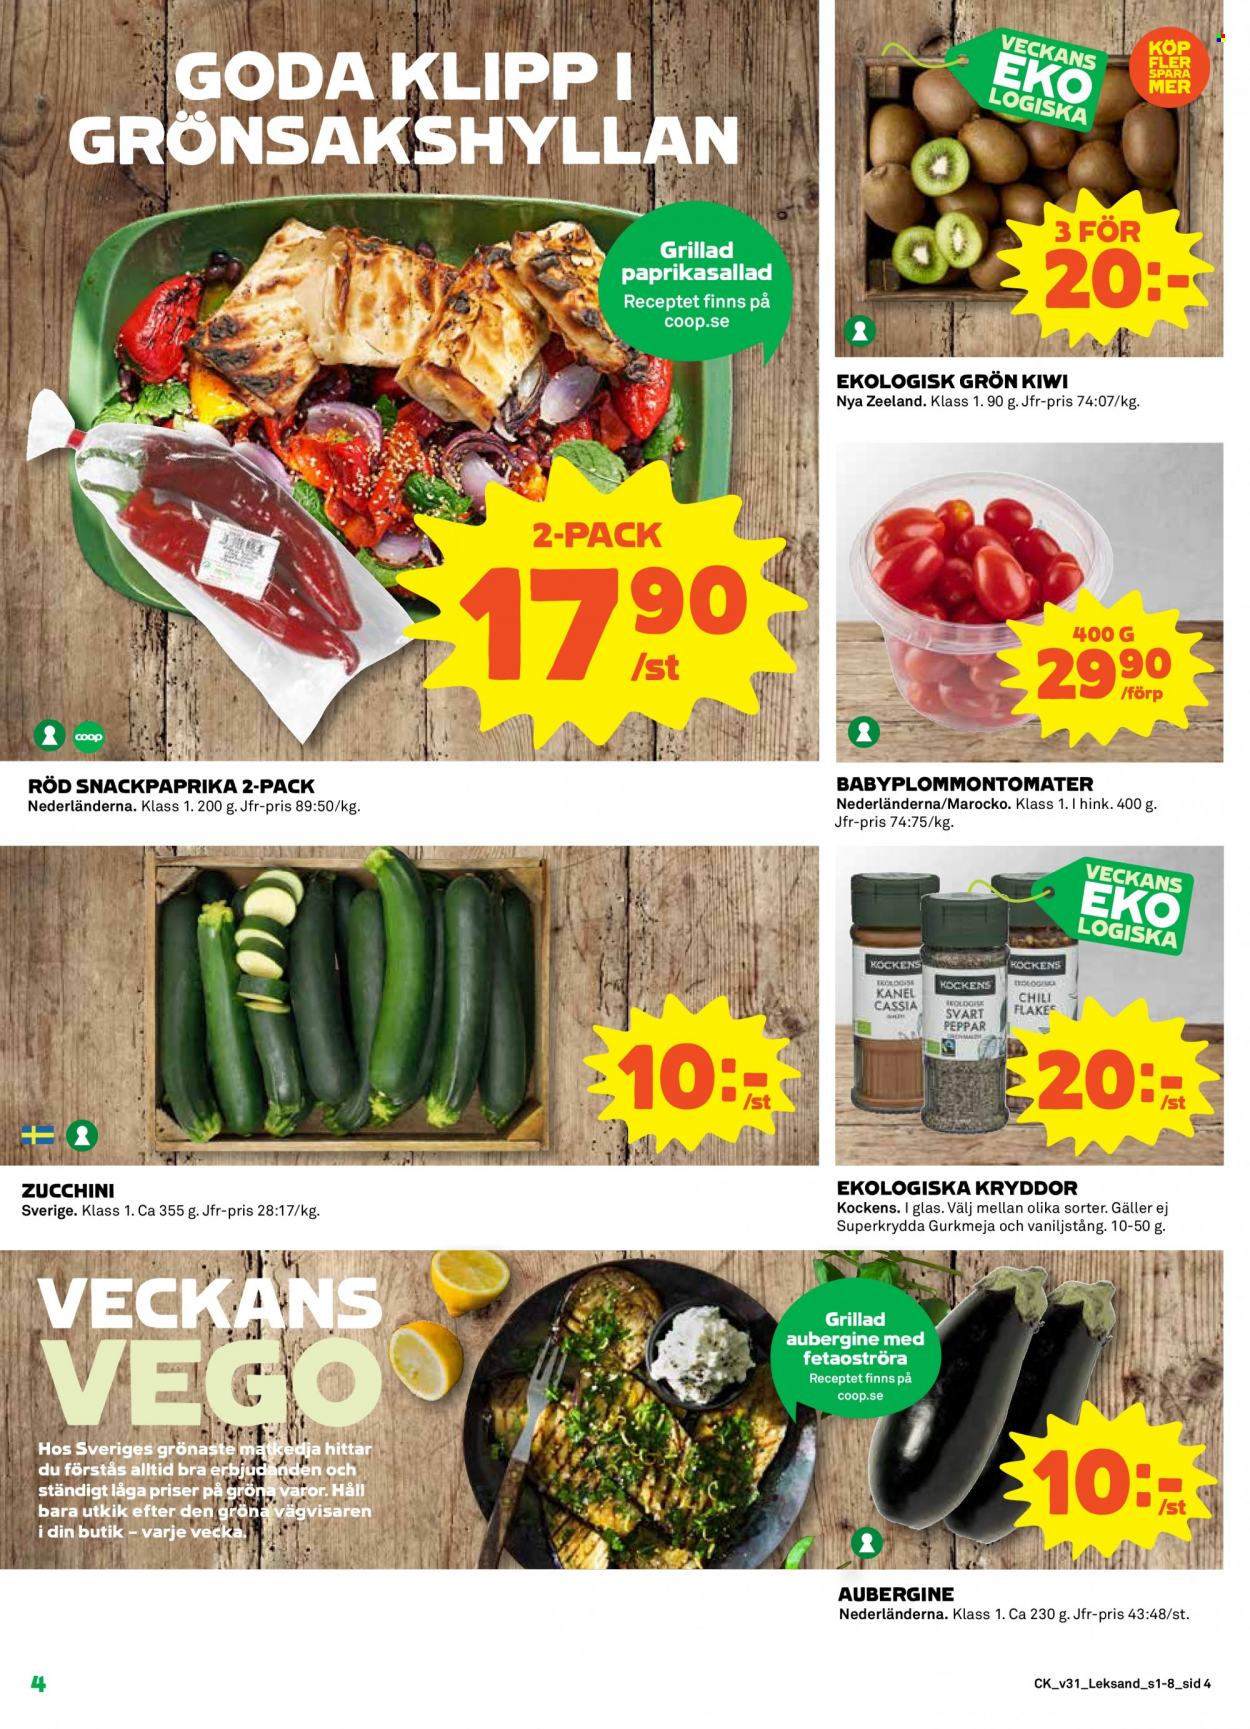 Coop reklamblad - 1/8 2022 - 7/8 2022 - varor från reklamblad - kiwi, aubergine, zucchini, Kockens, kryddor, hink. Sida 4.